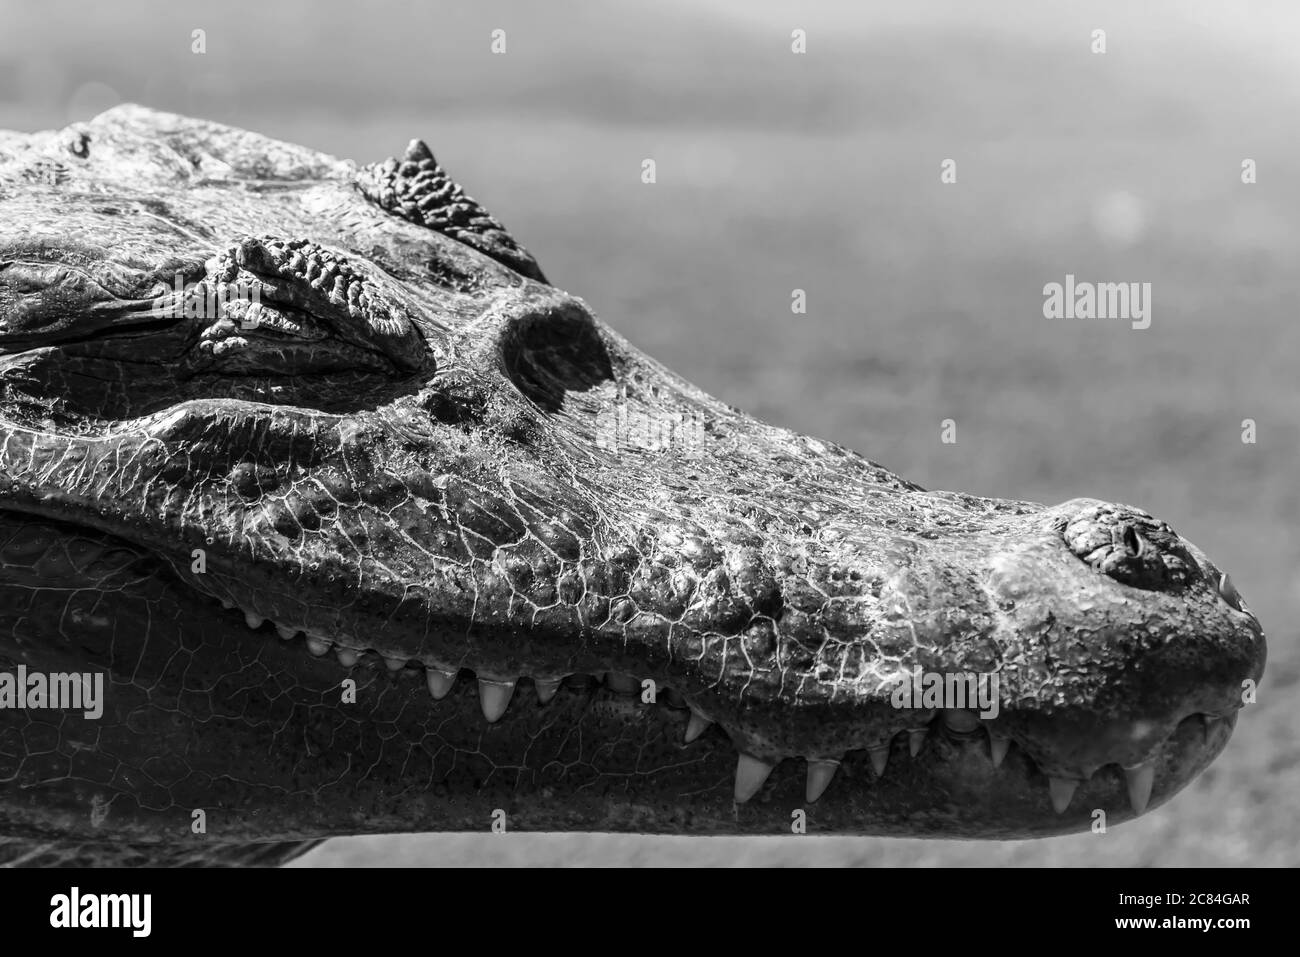 Photo noir et blanc en gros plan sur le visage de l’alligator Banque D'Images